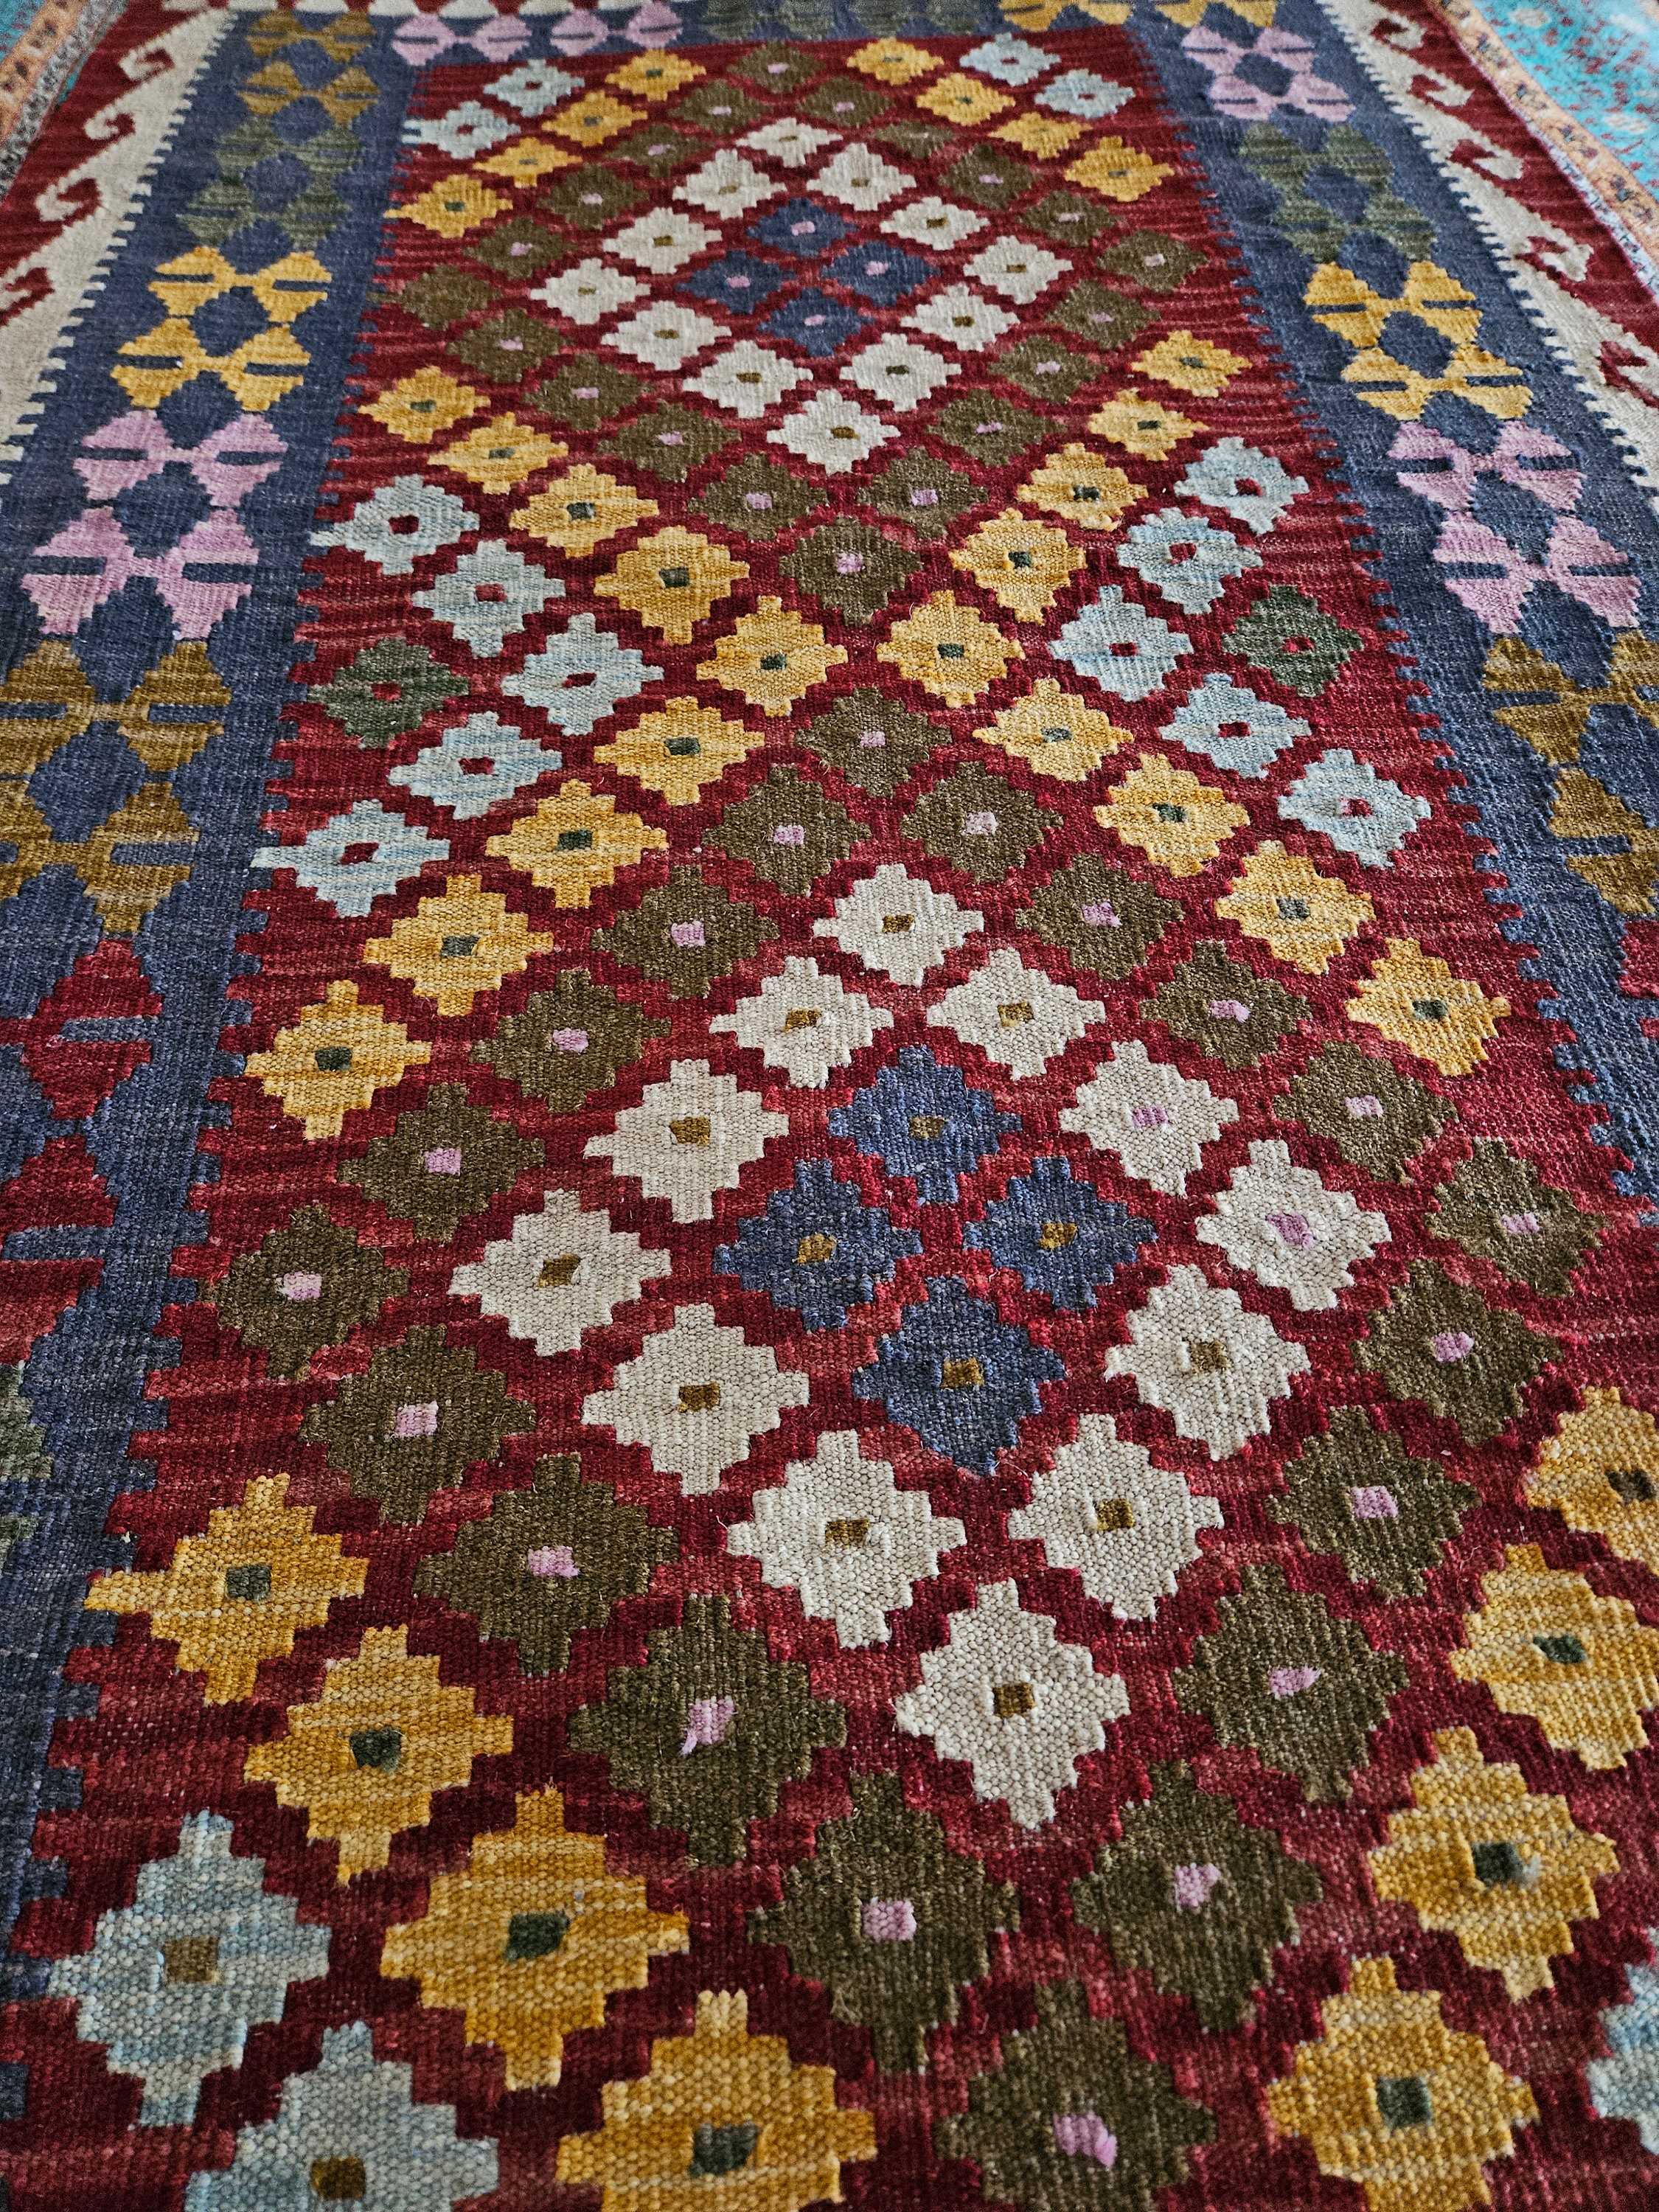 3x5 Kilim rug Afghan Wool Kilim bedroom Carpet